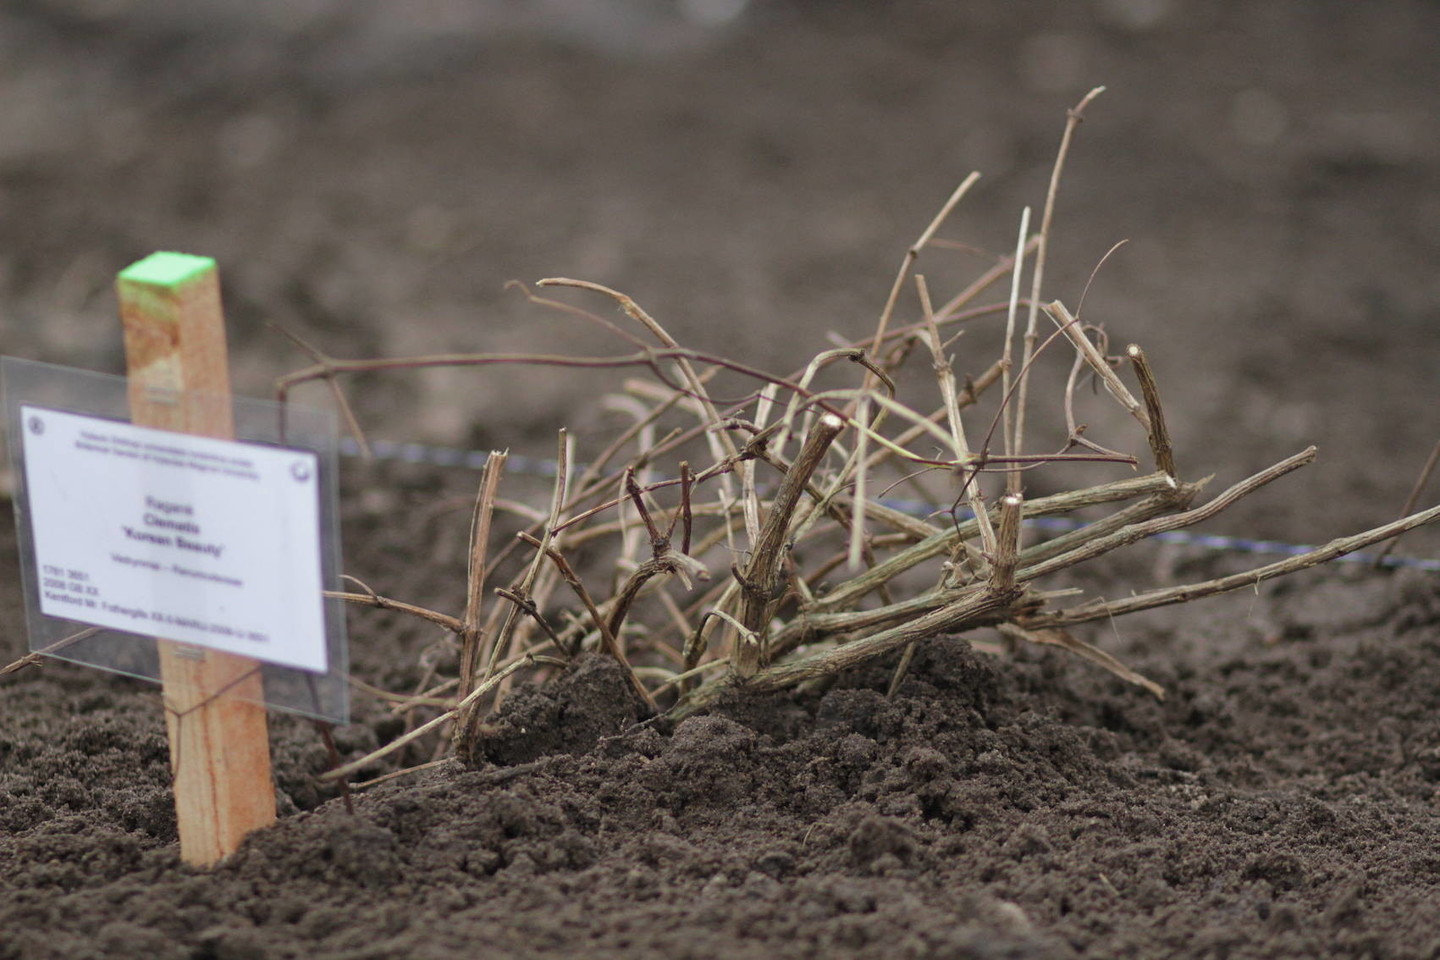 Pasak botanikos sodo specialistų, laukinių raganių auginimas nėra sudėtingas, tačiau reikalauja priežiūros.<br>VDU ir Wikipedia nuotr.